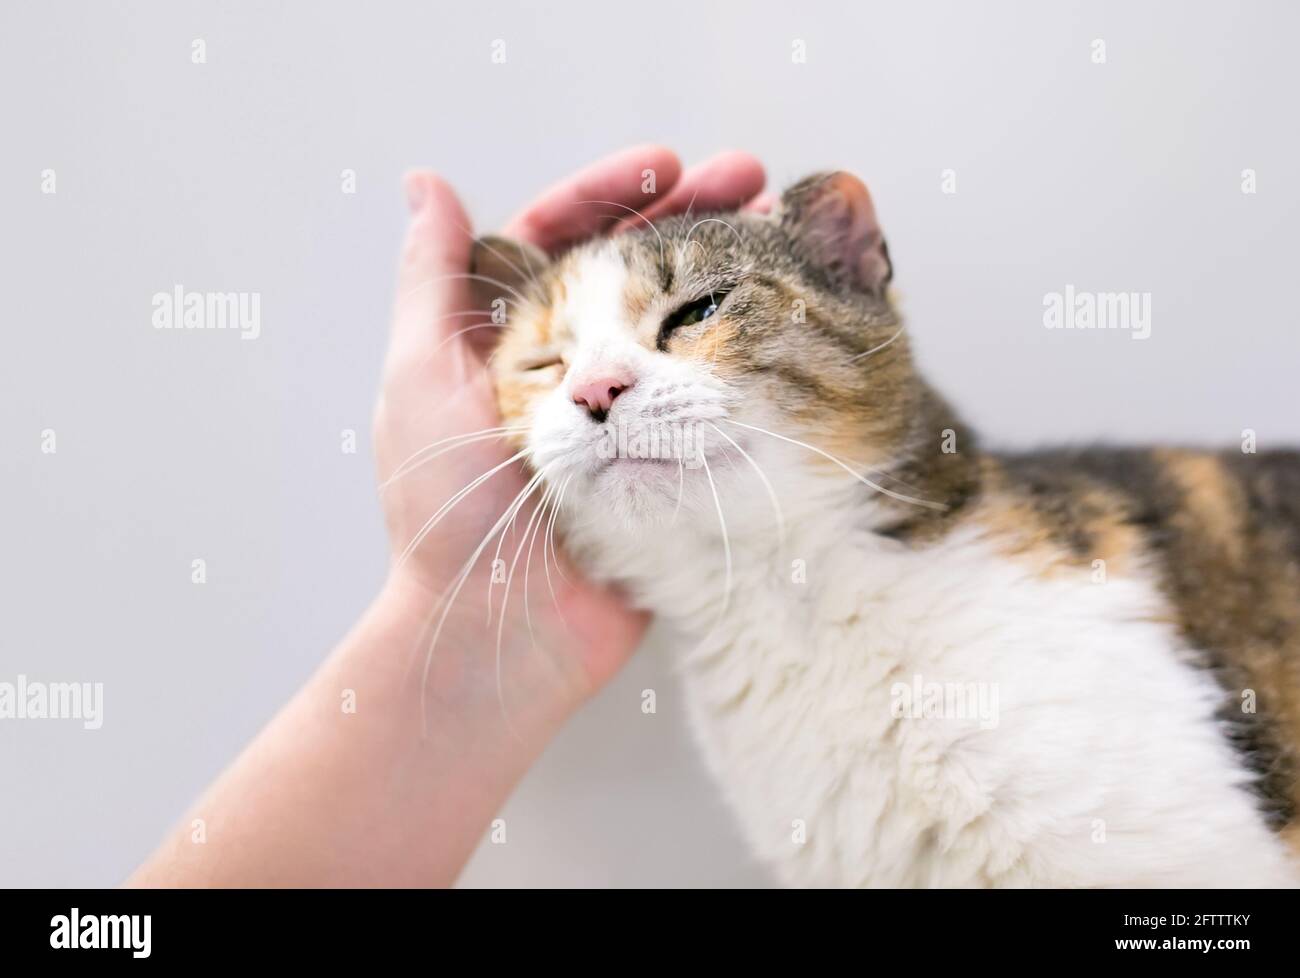 Una persona che accarezzava un gatto tabby calico con 'orecchio cavolfiore', una deformità causata da una lesione o ematoma dell'orecchio Foto Stock